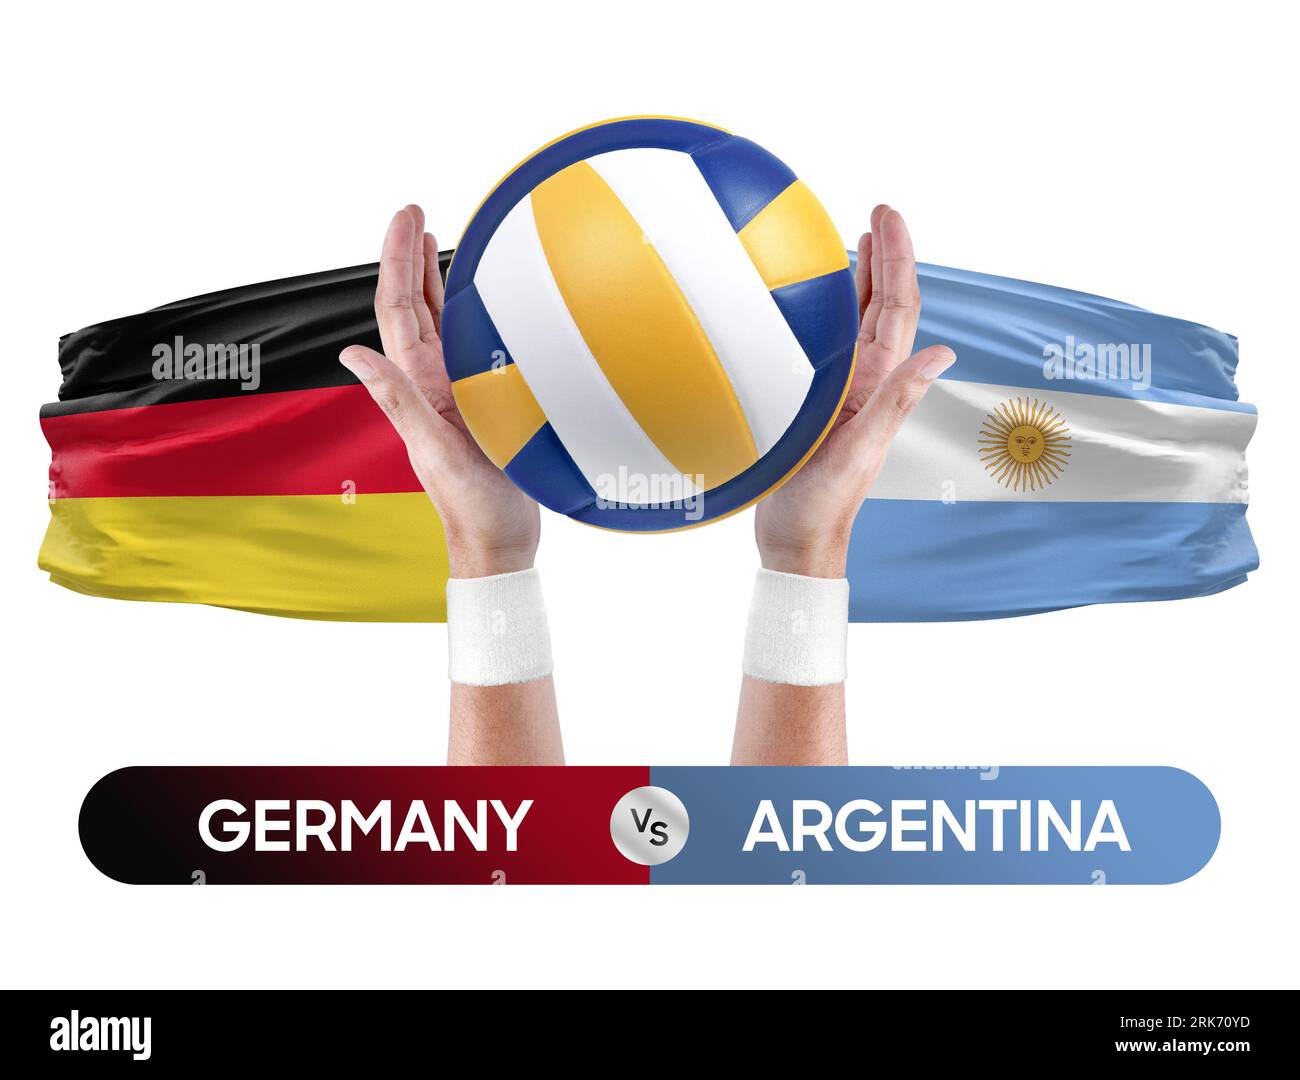 Deutschland gegen Argentinien Nationalmannschaften Volleyball Volleyball Volleyball Match Competition Concept. Stockfoto